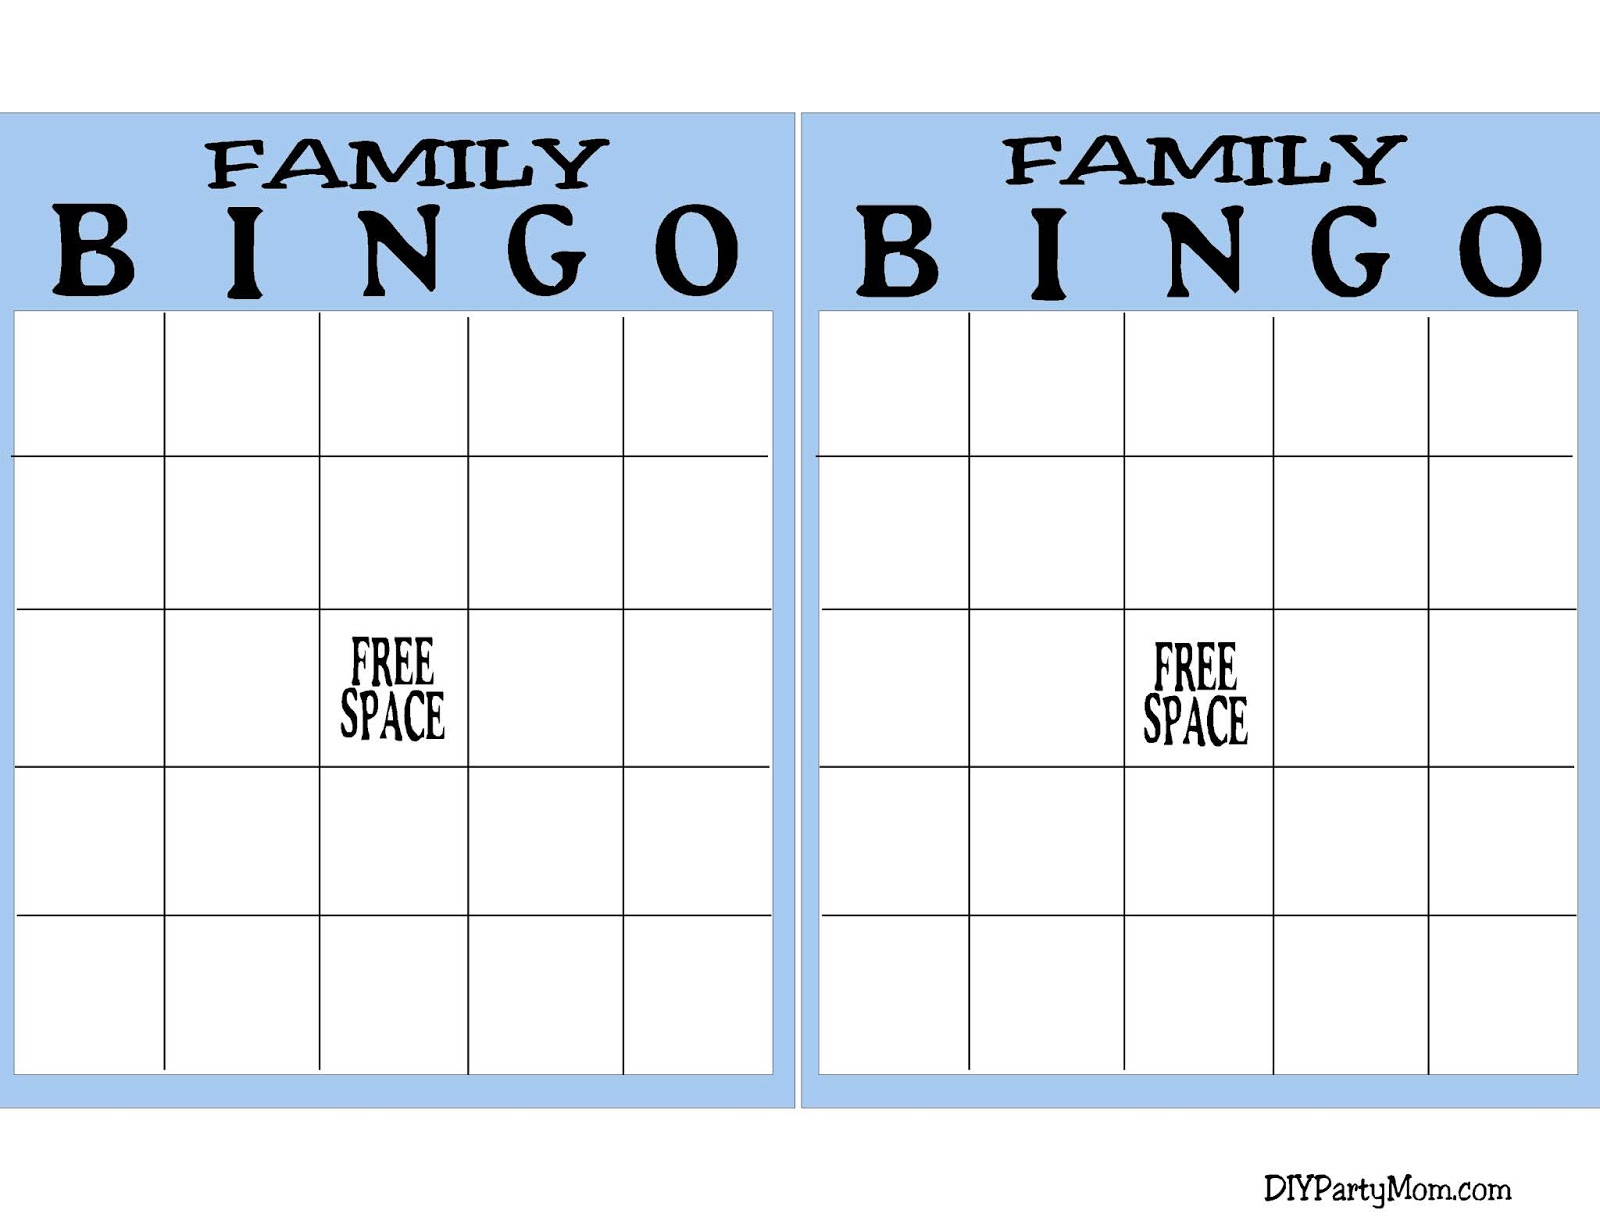 diy-party-mom-family-reunion-bingo-game